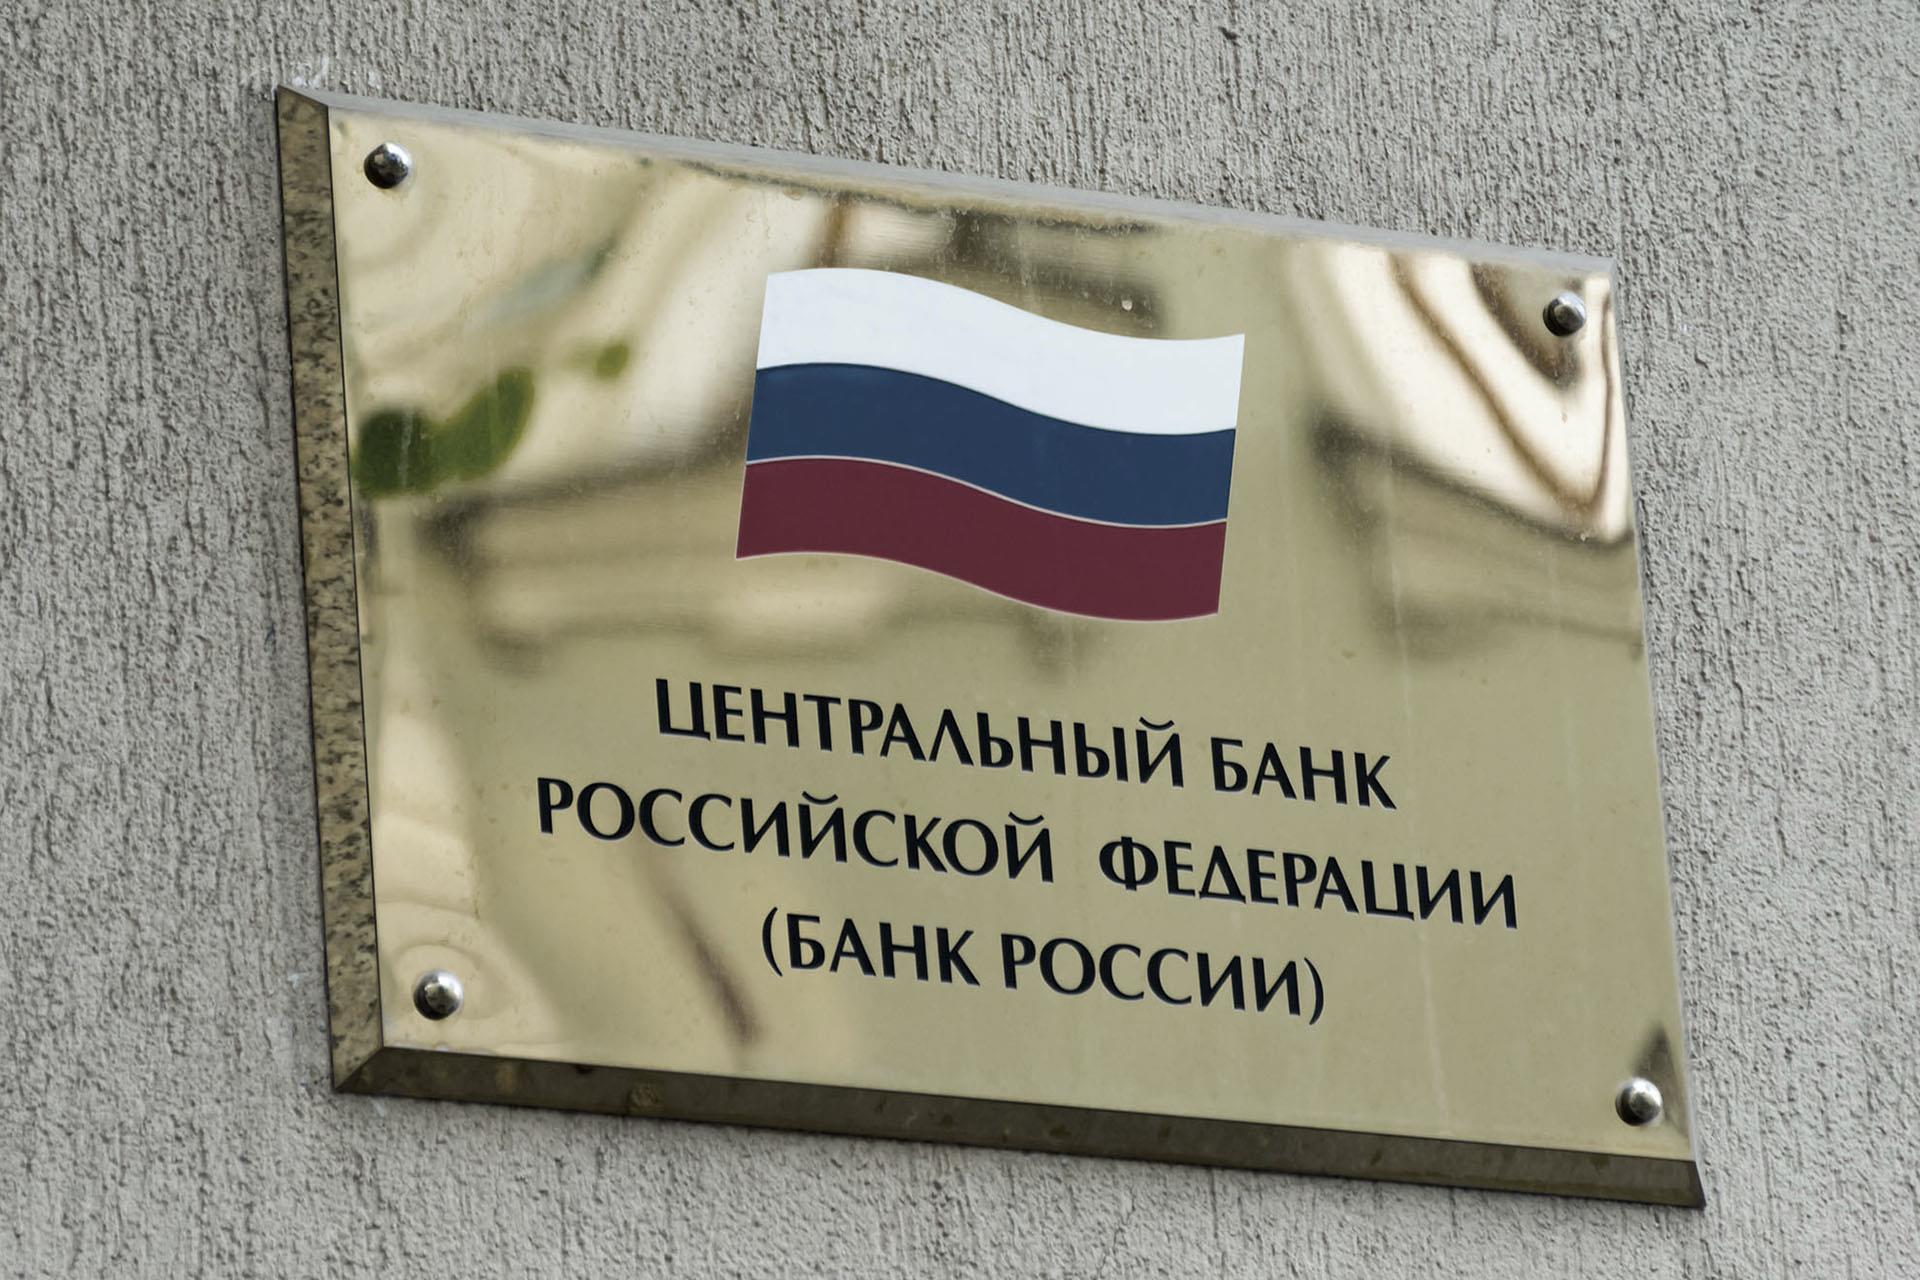 ЦБ РФ решил не возобновлять фондовые торги на Московской бирже 1 марта